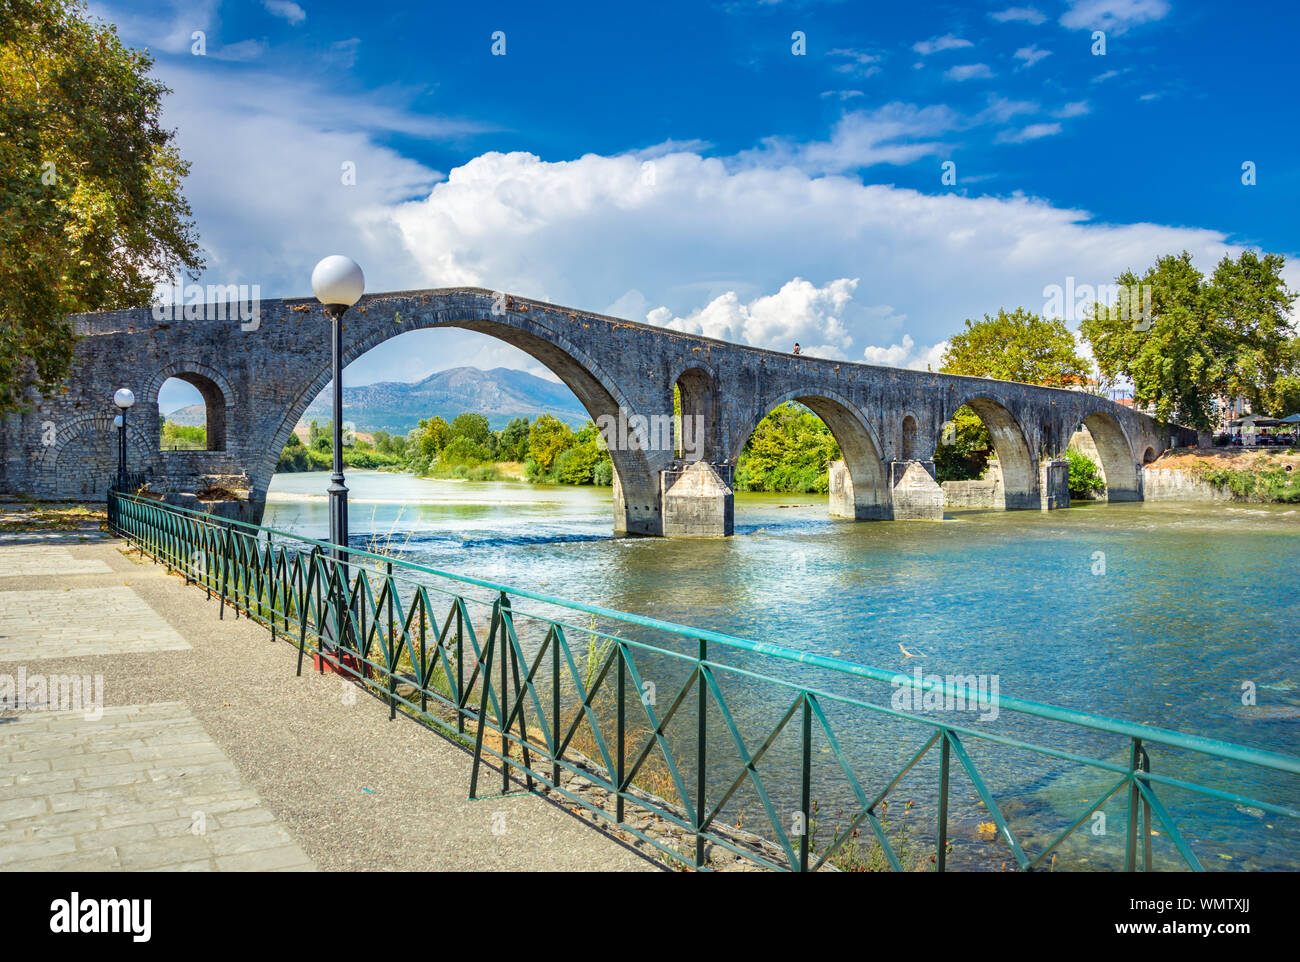 Le pont d'Arta est un vieux pont en pierre voûtée qui traverse le fleuve Arachthos dans l'ouest de la ville d'Arta en Grèce. Banque D'Images